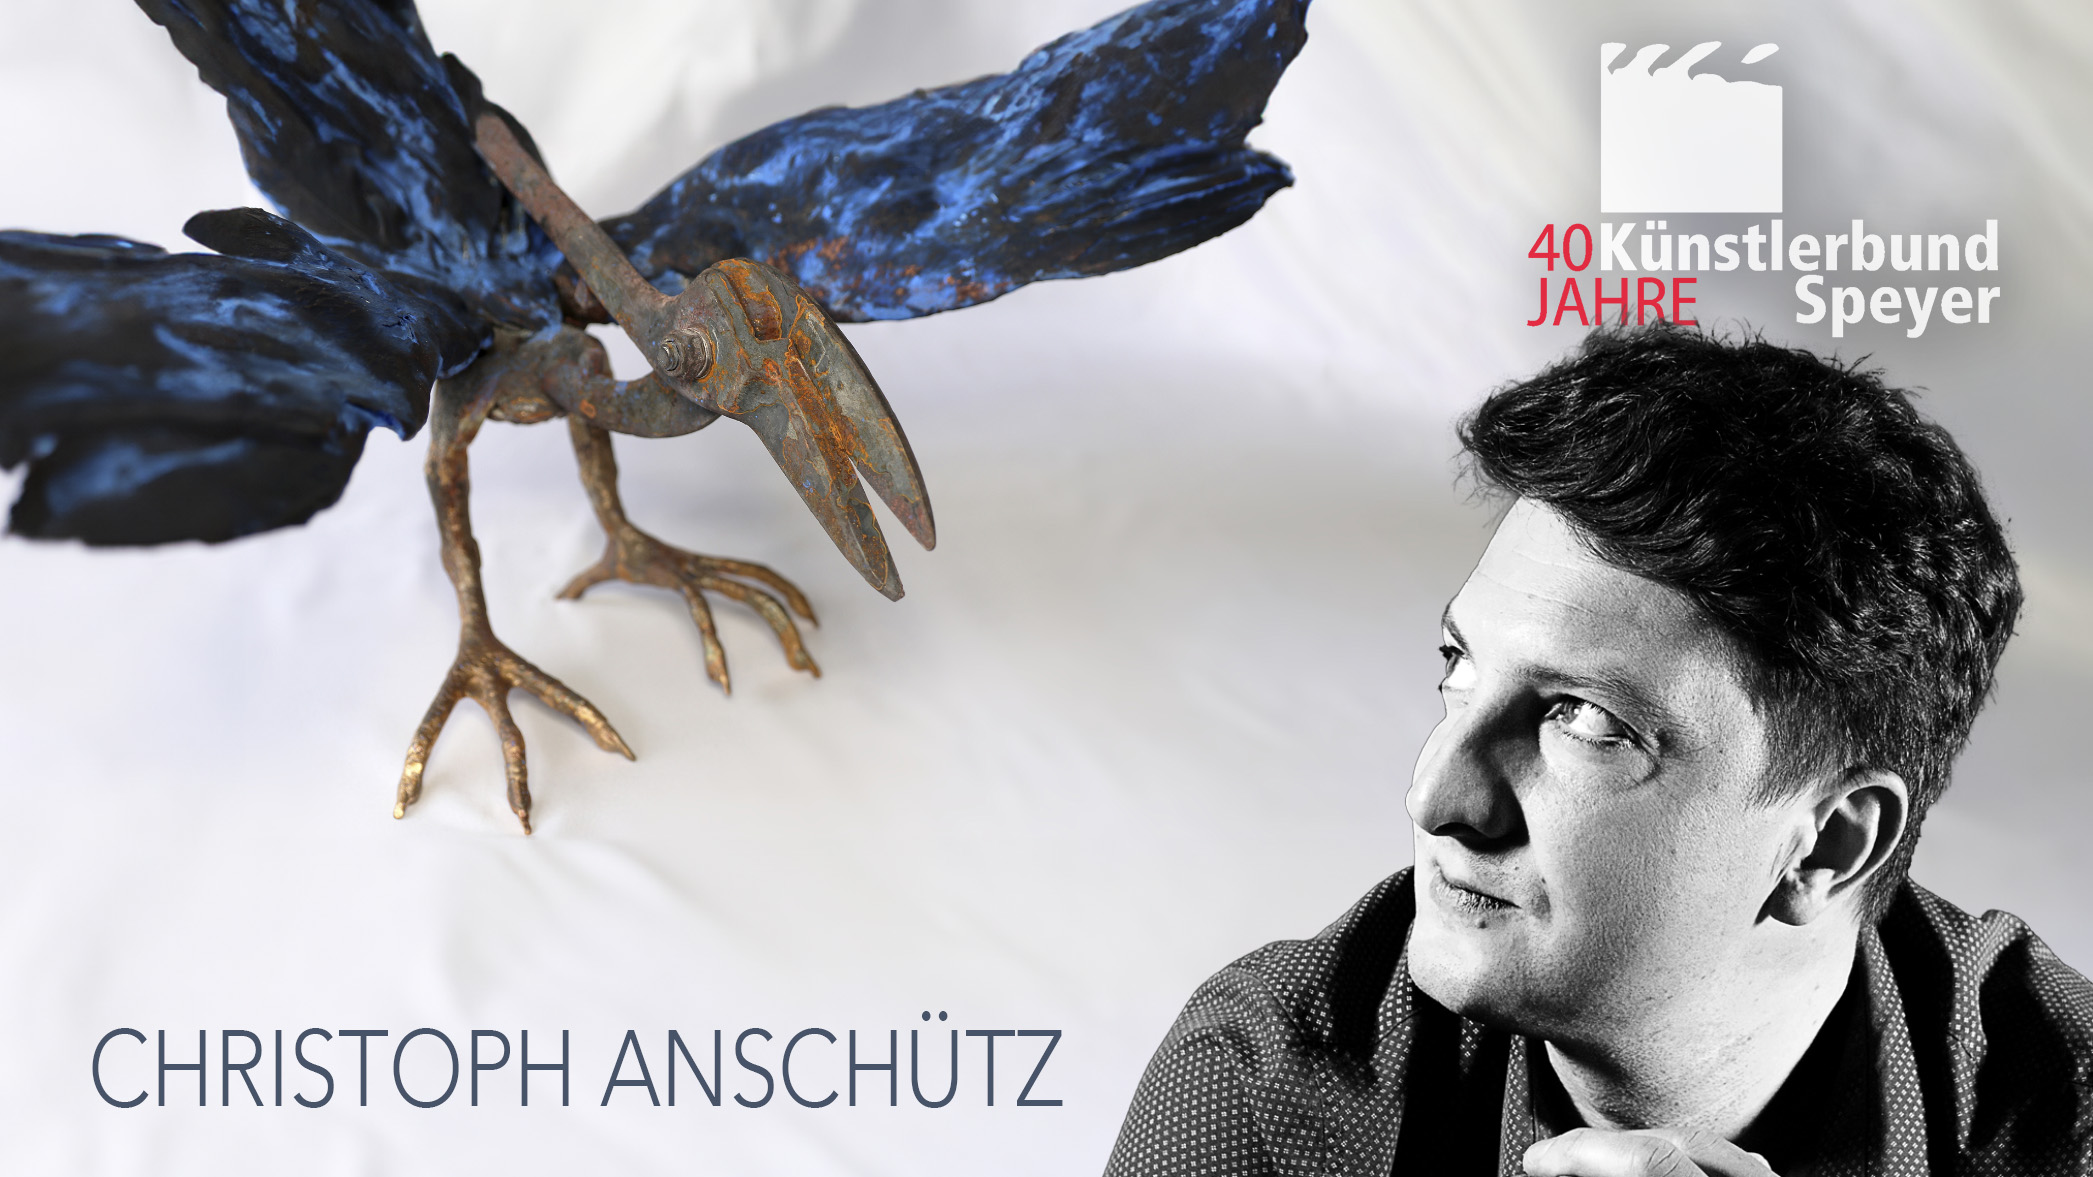 Christoph Anschütz | Geschöpfe zwischen Phantasie und Realität